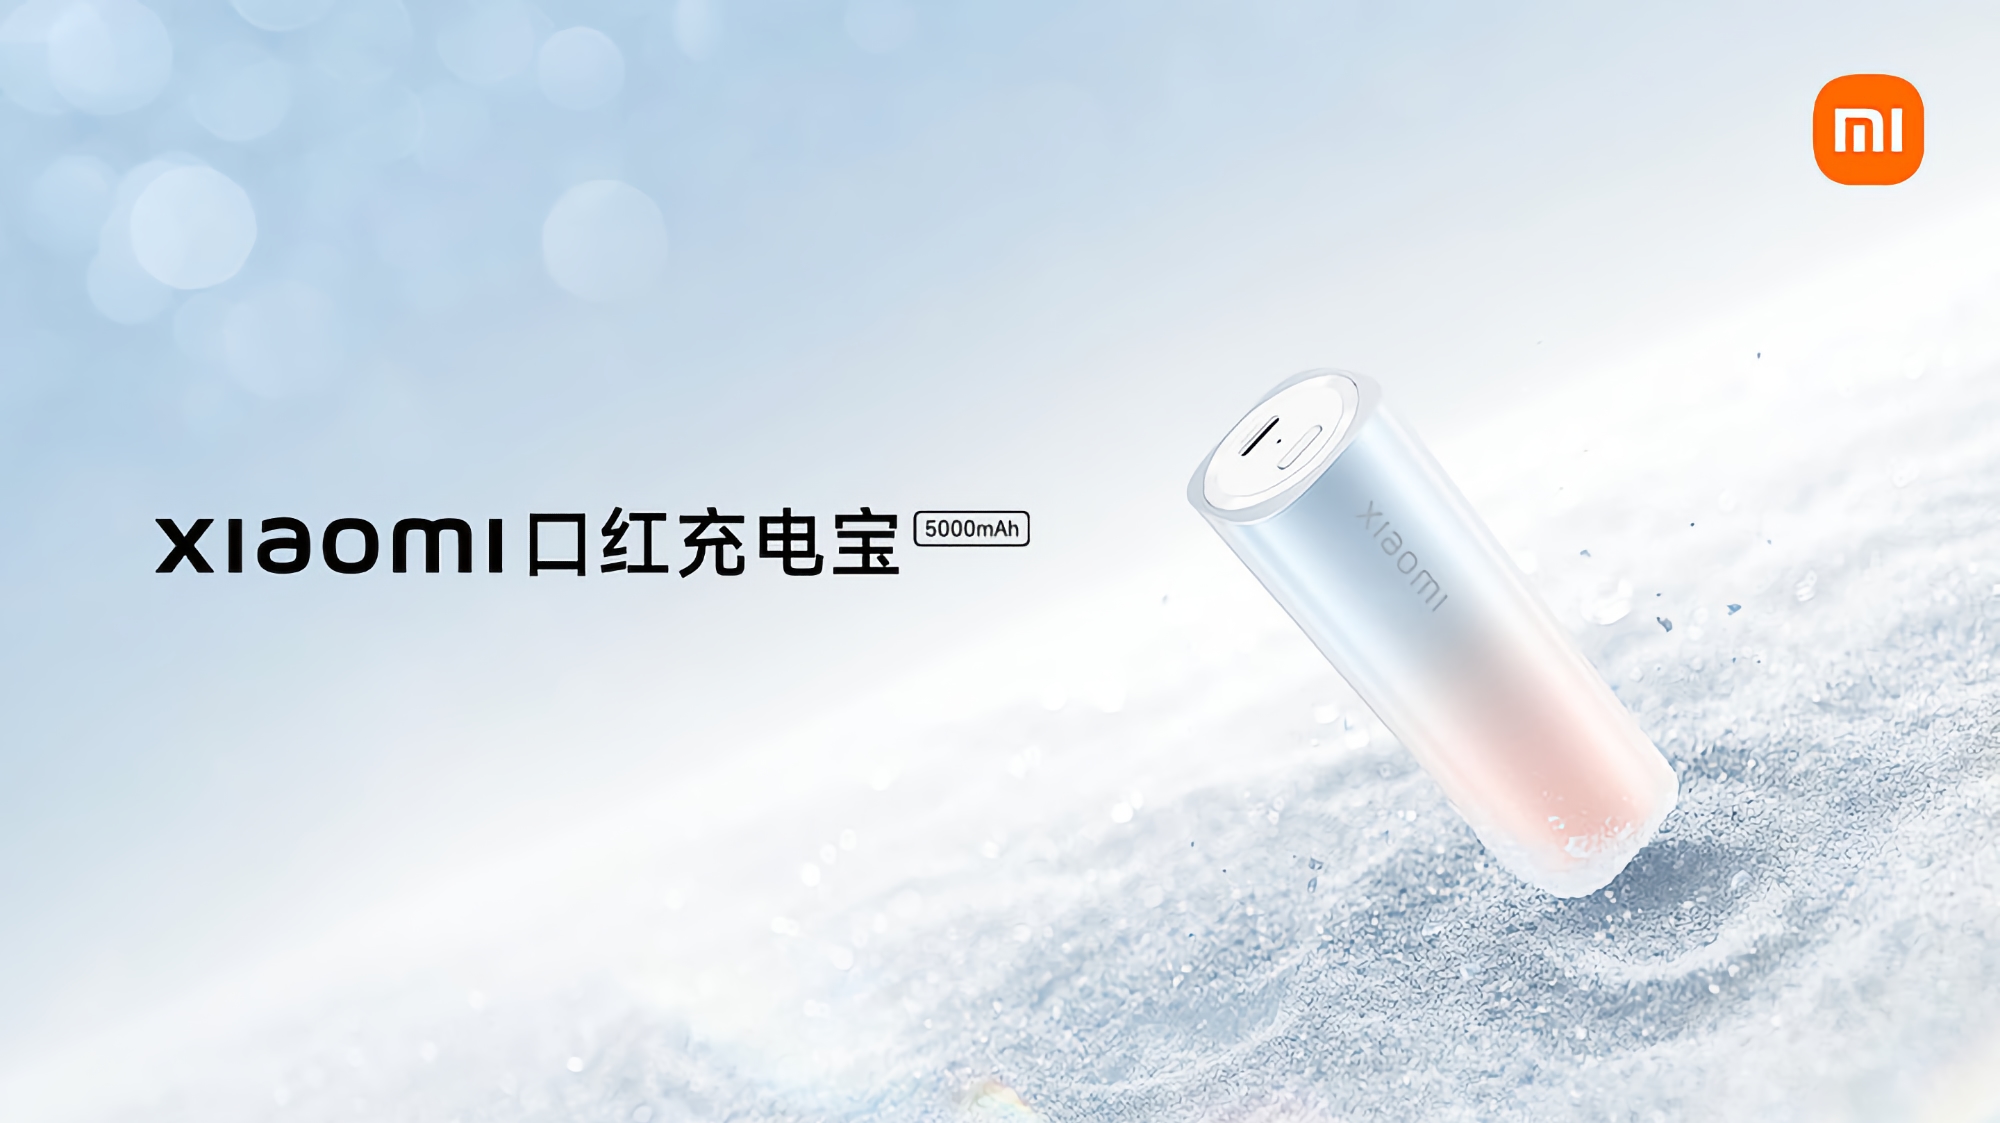 Xiaomi prezentuje powerbank o pojemności 5000mAh w kształcie szminki z możliwością szybkiego ładowania 20W